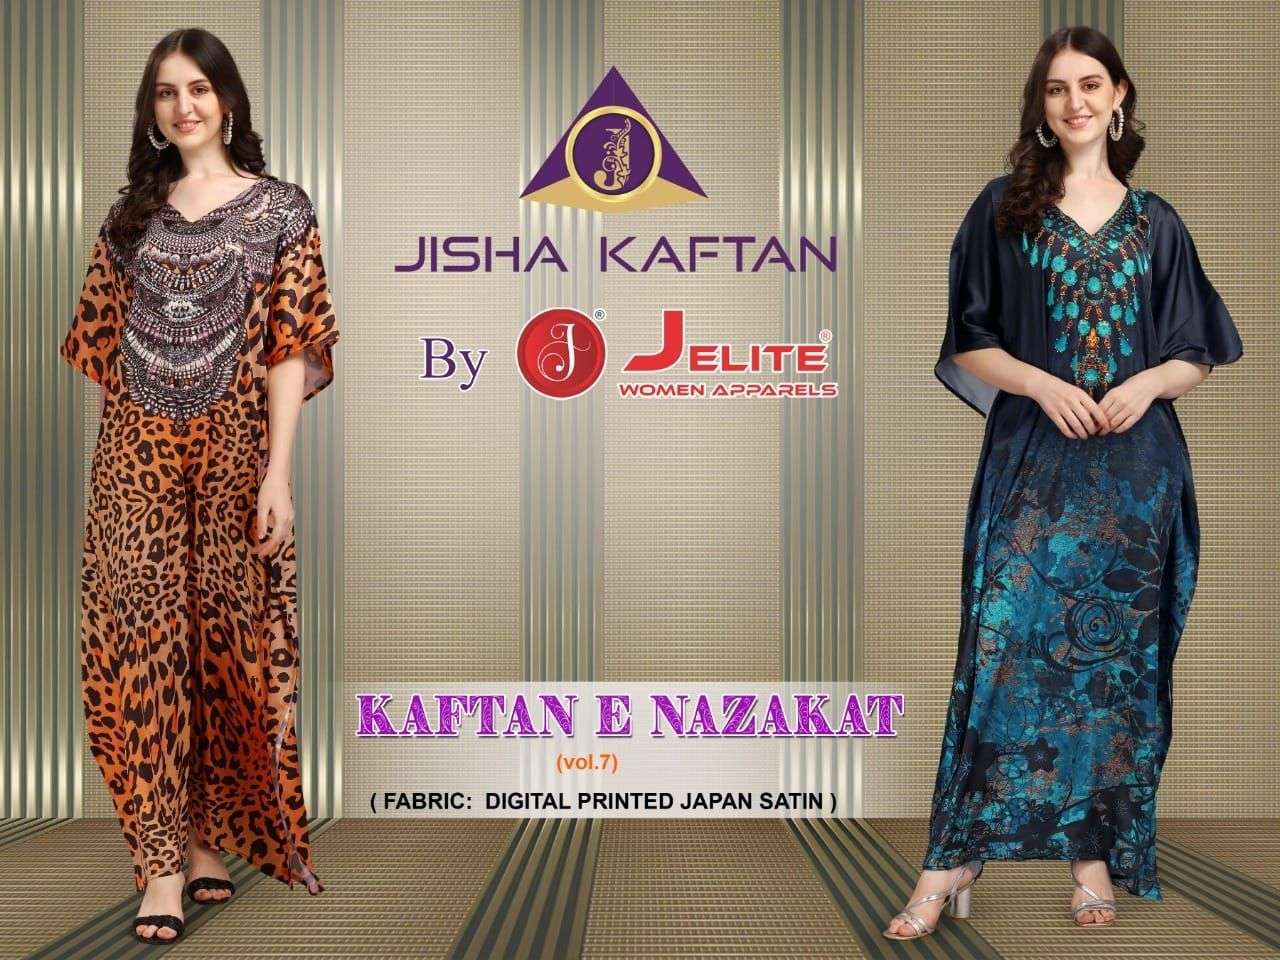 jelite kaftans vol 7 catalogue wholesale online supplier surat